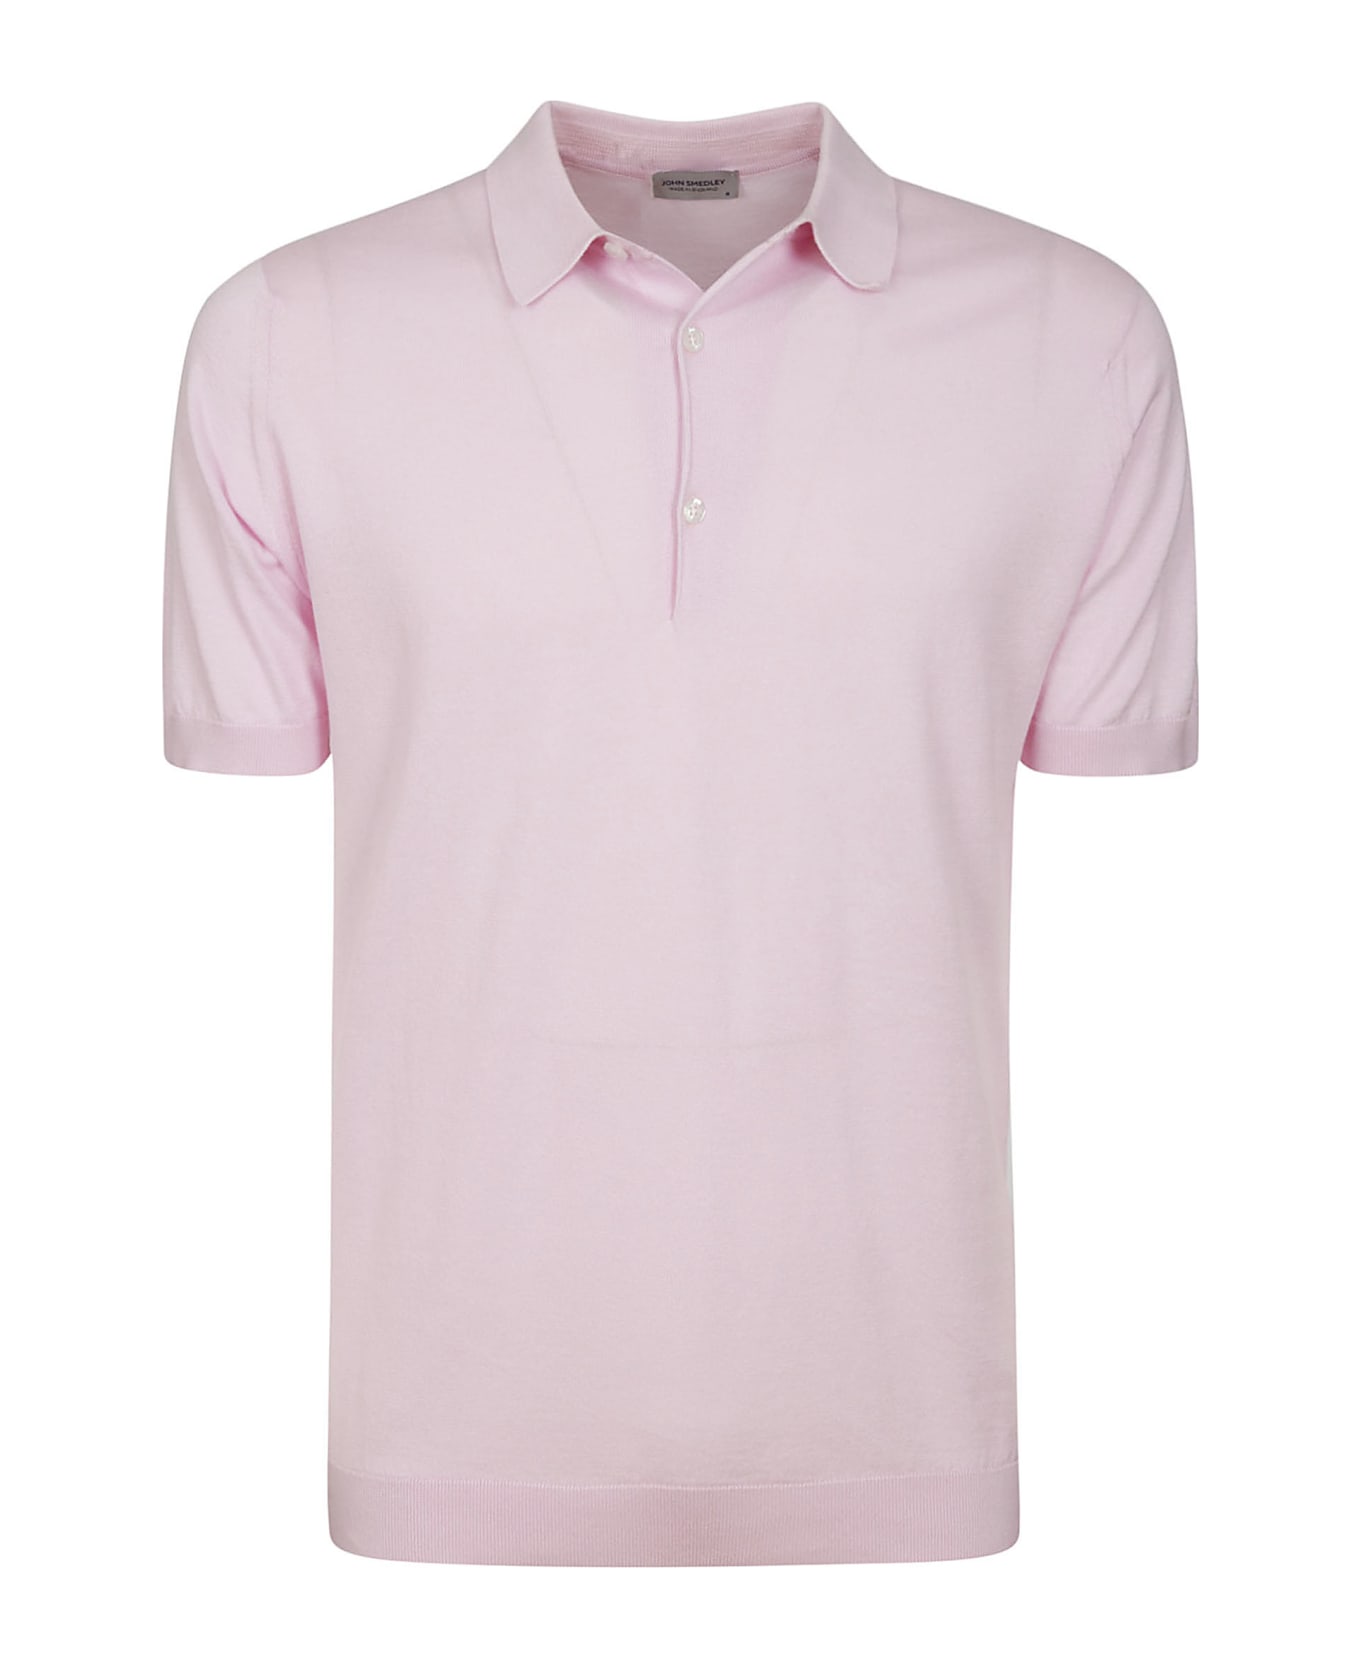 John Smedley Adrian Shirt Ss - PINK